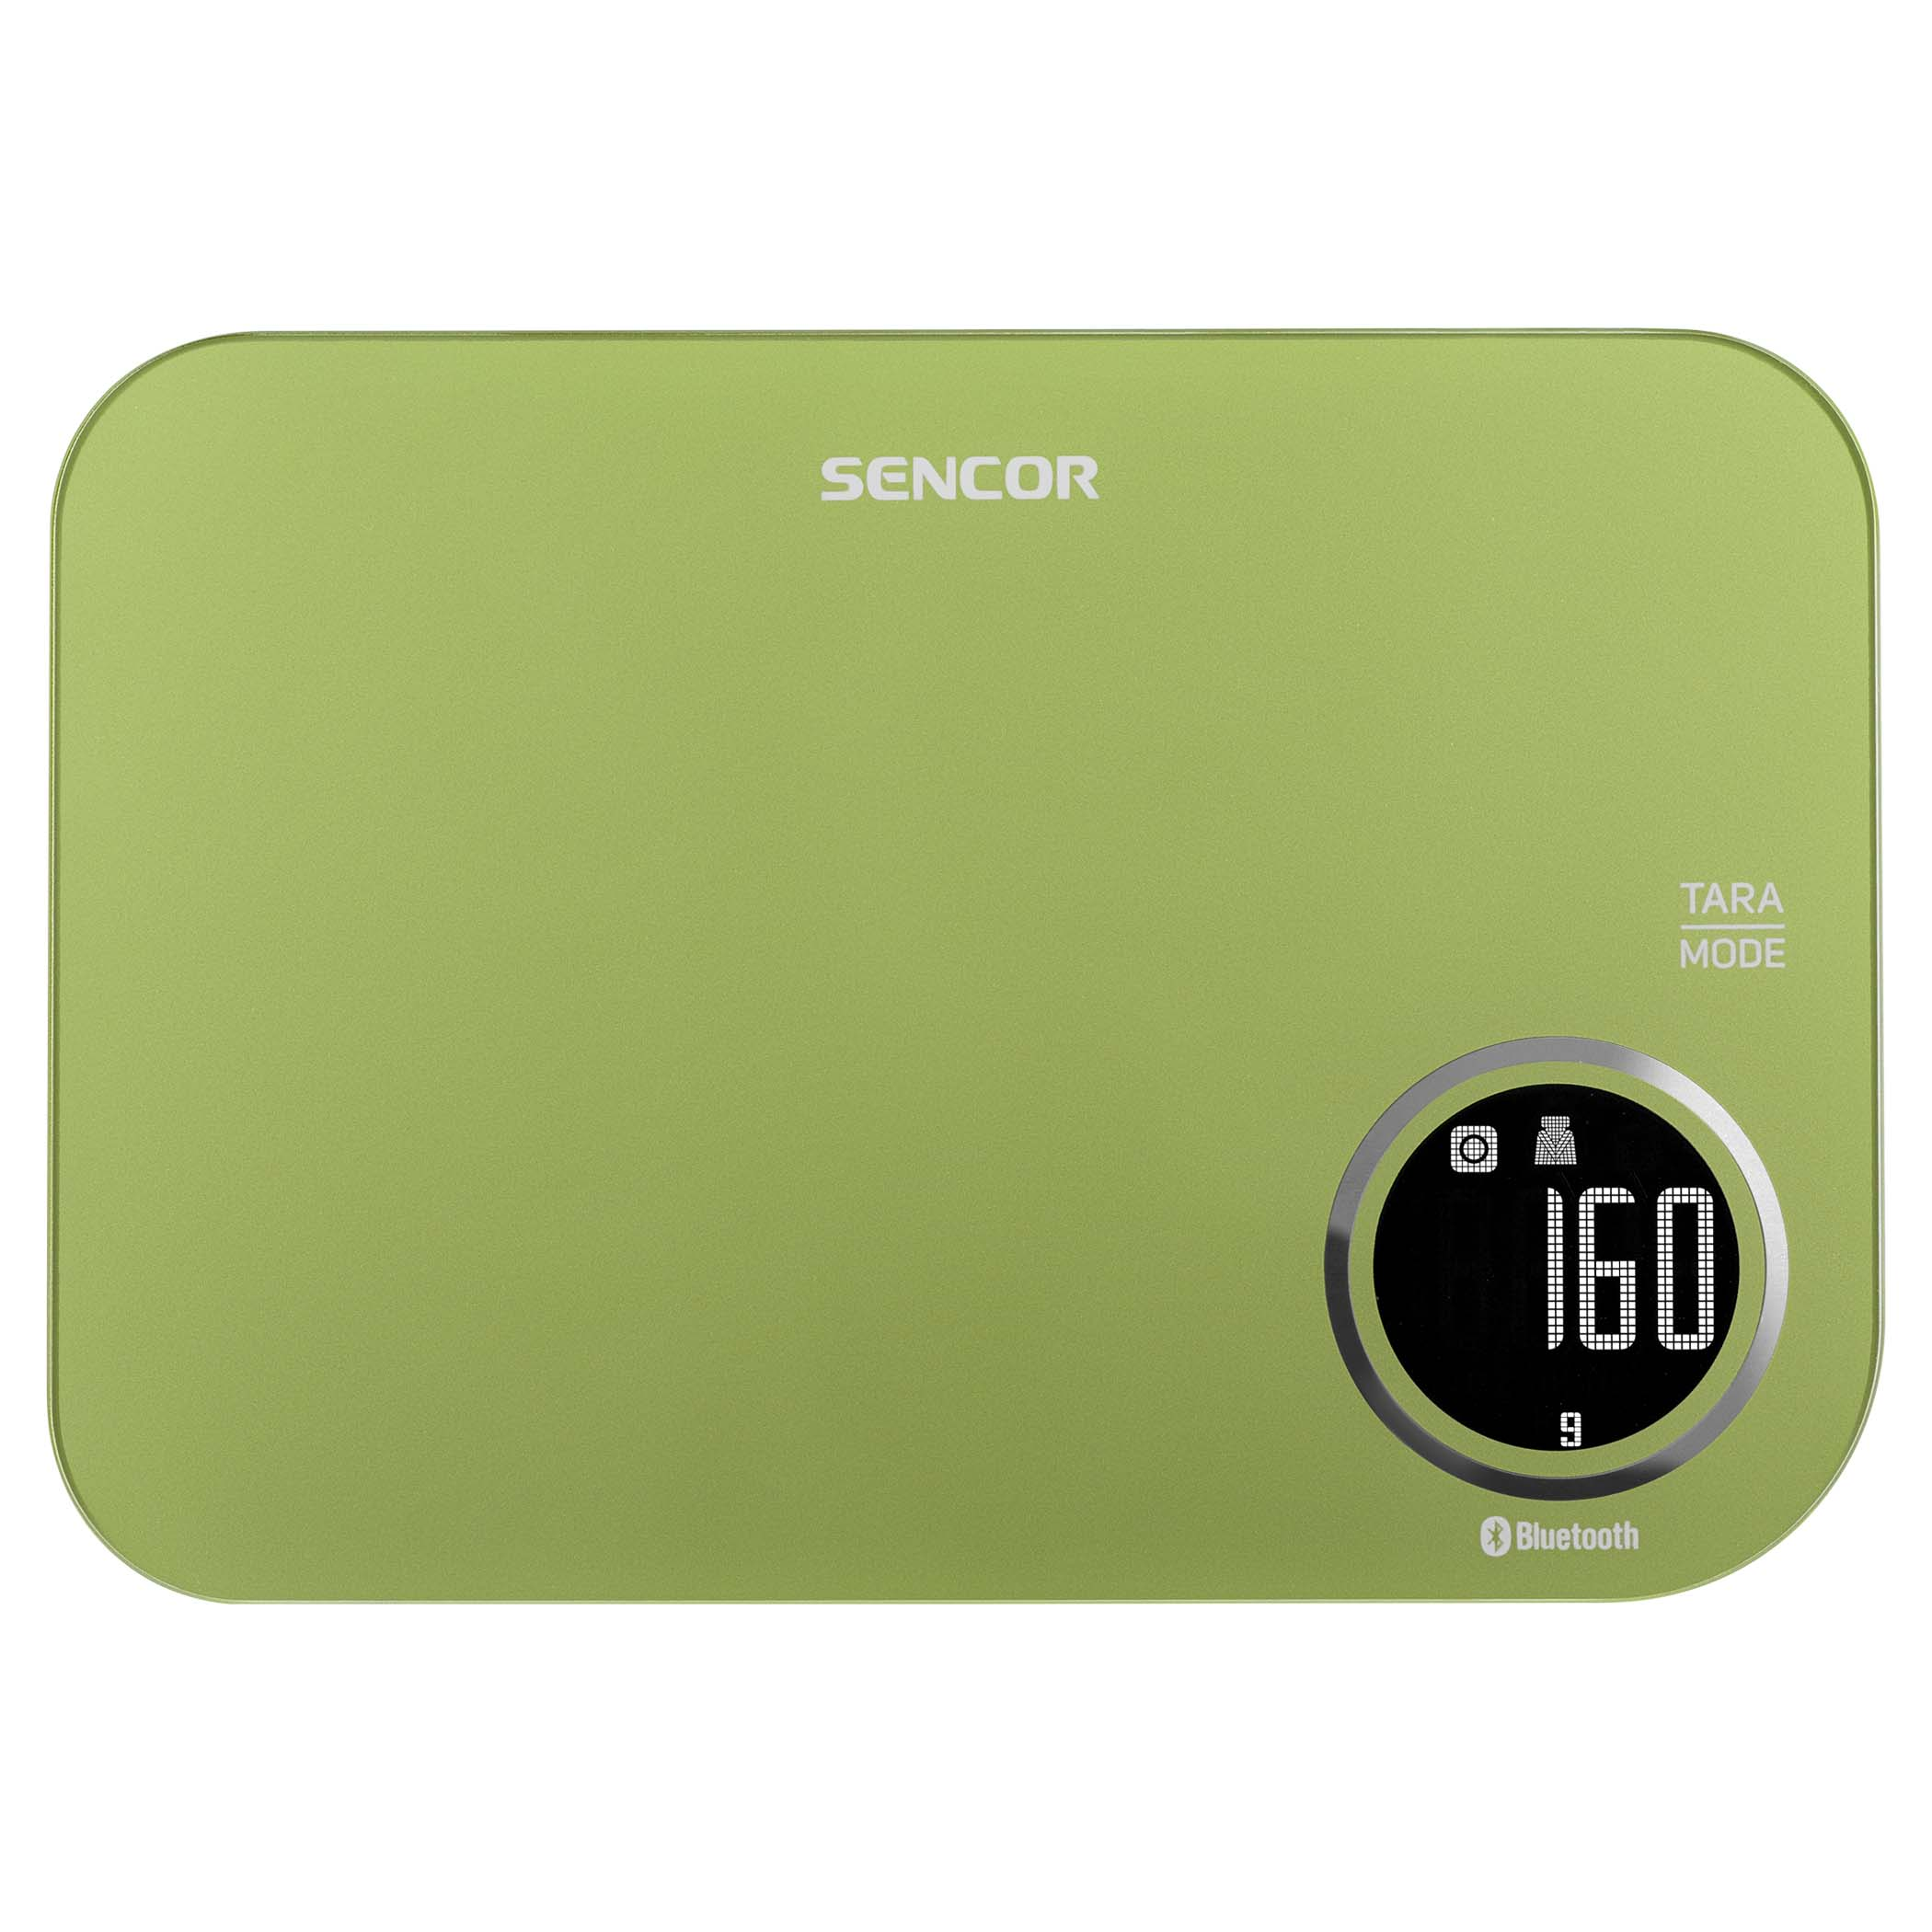 Ваги Sencor кухонні, 5кг, підключення до смартфону, AAAx2, пластик, зелений фото